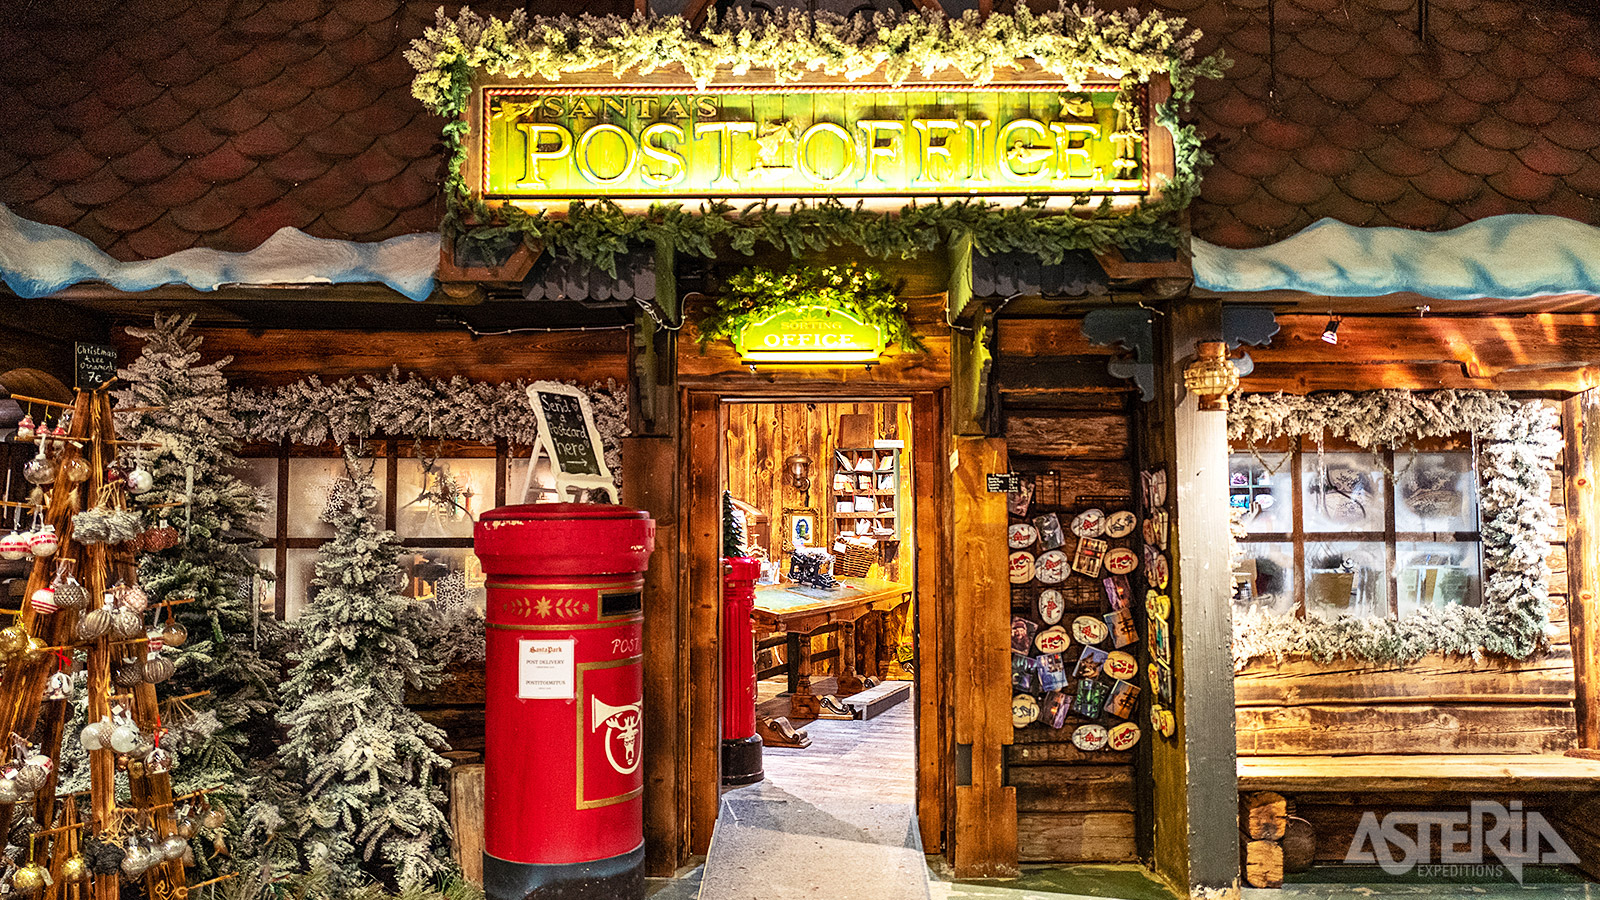 In het Santa Claus Village beschikt de kerstman over een eigen postkantoor